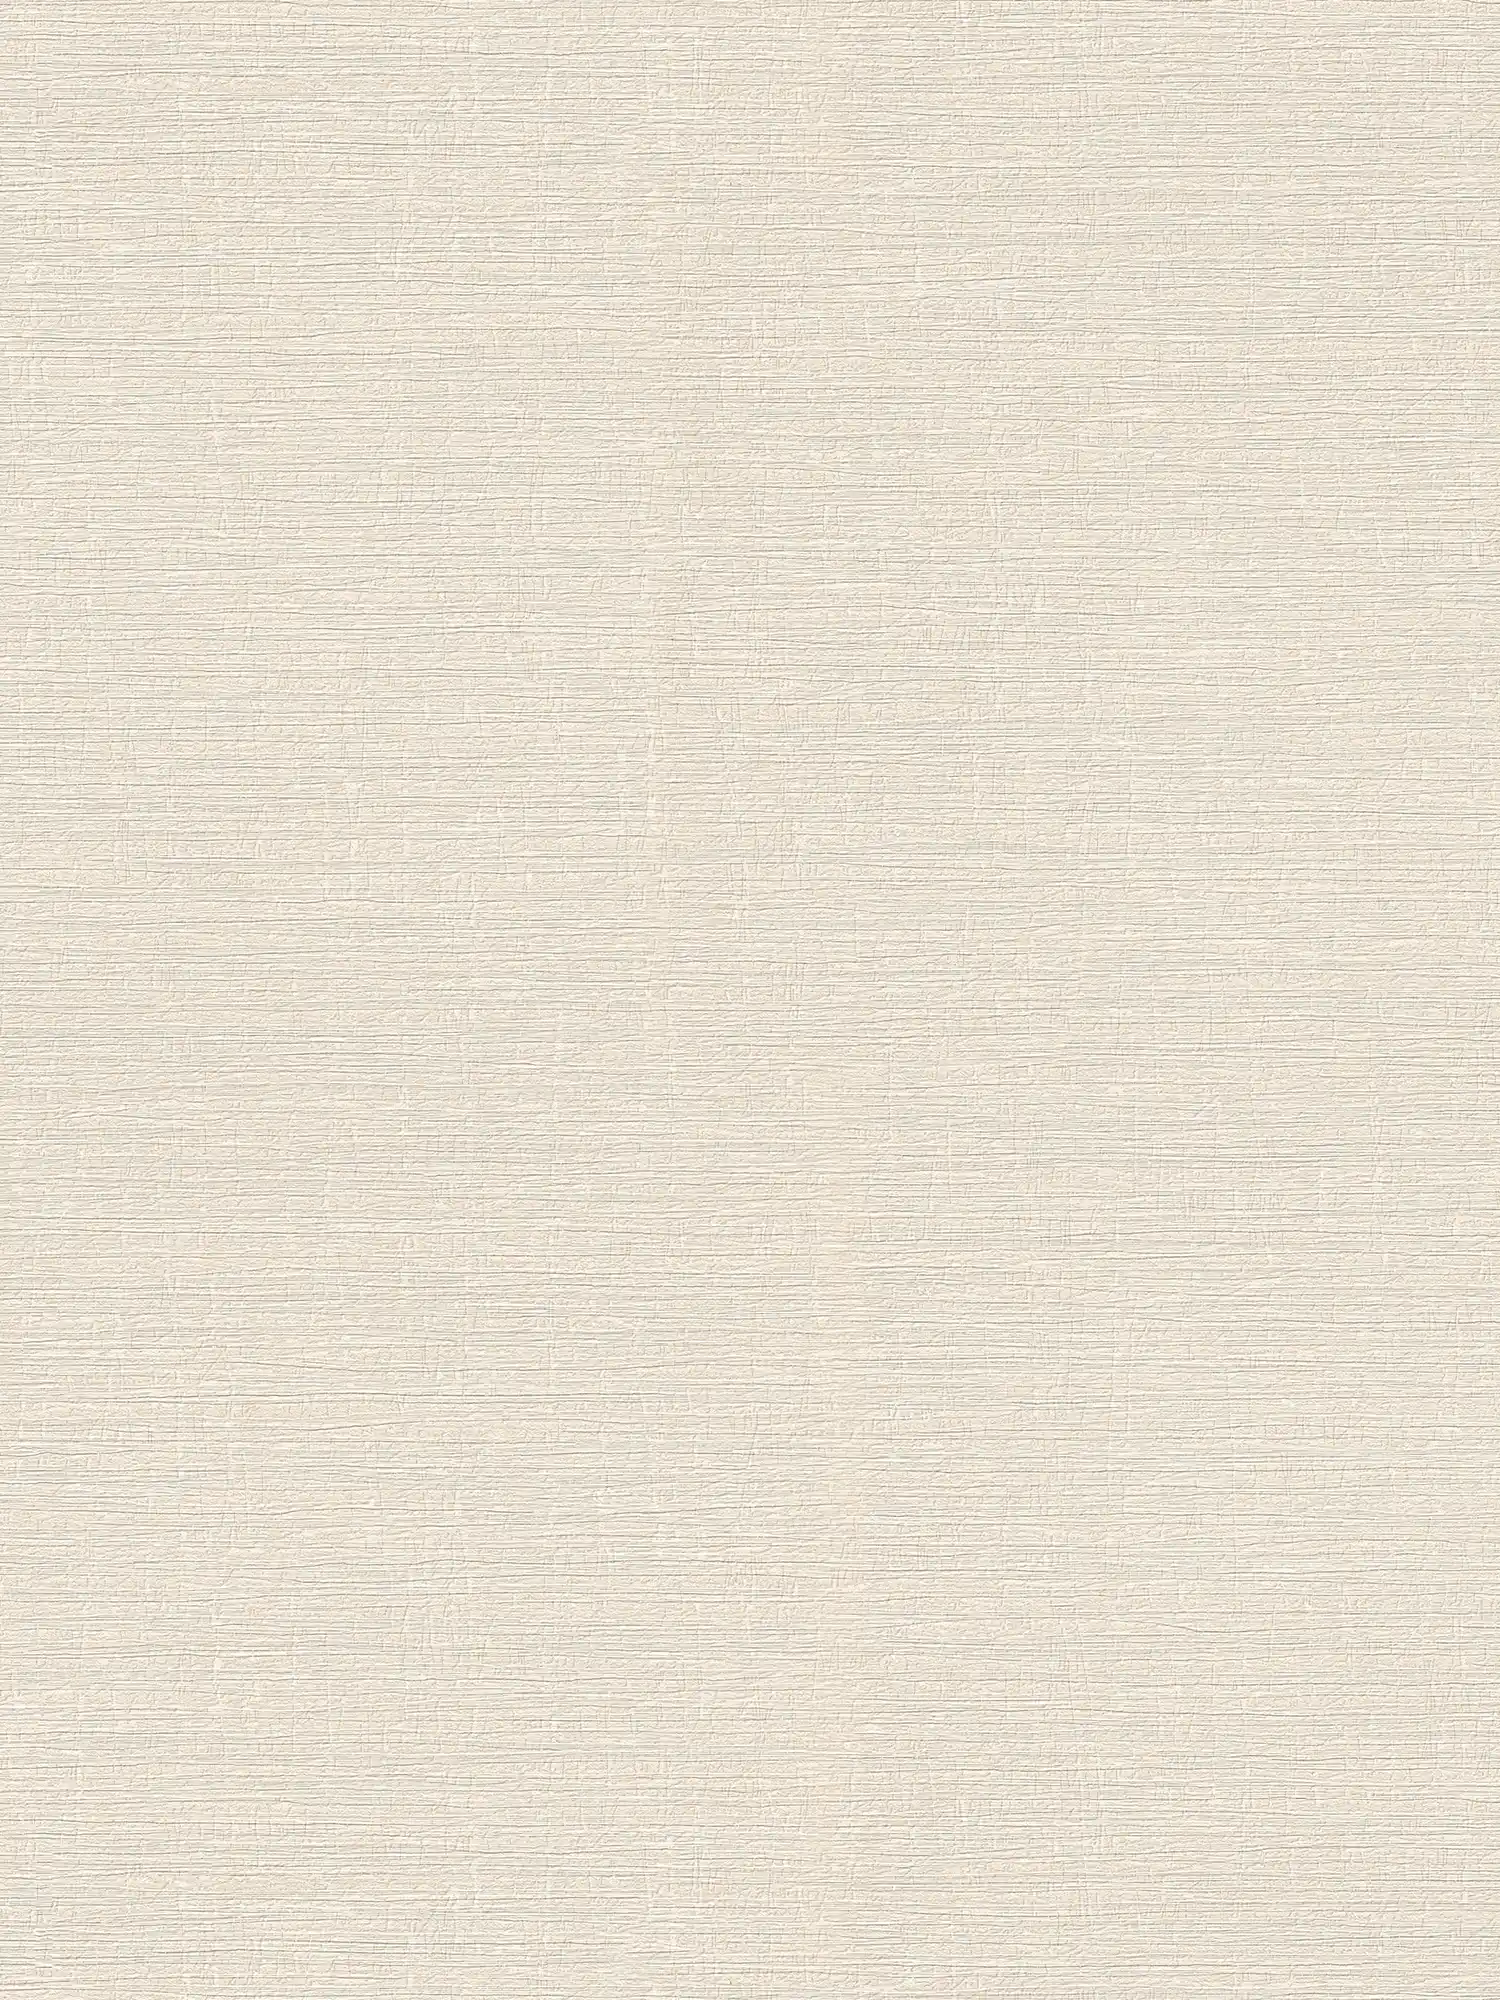 Licht gestructureerd eenheidsbehang in textiellook - beige, crème
